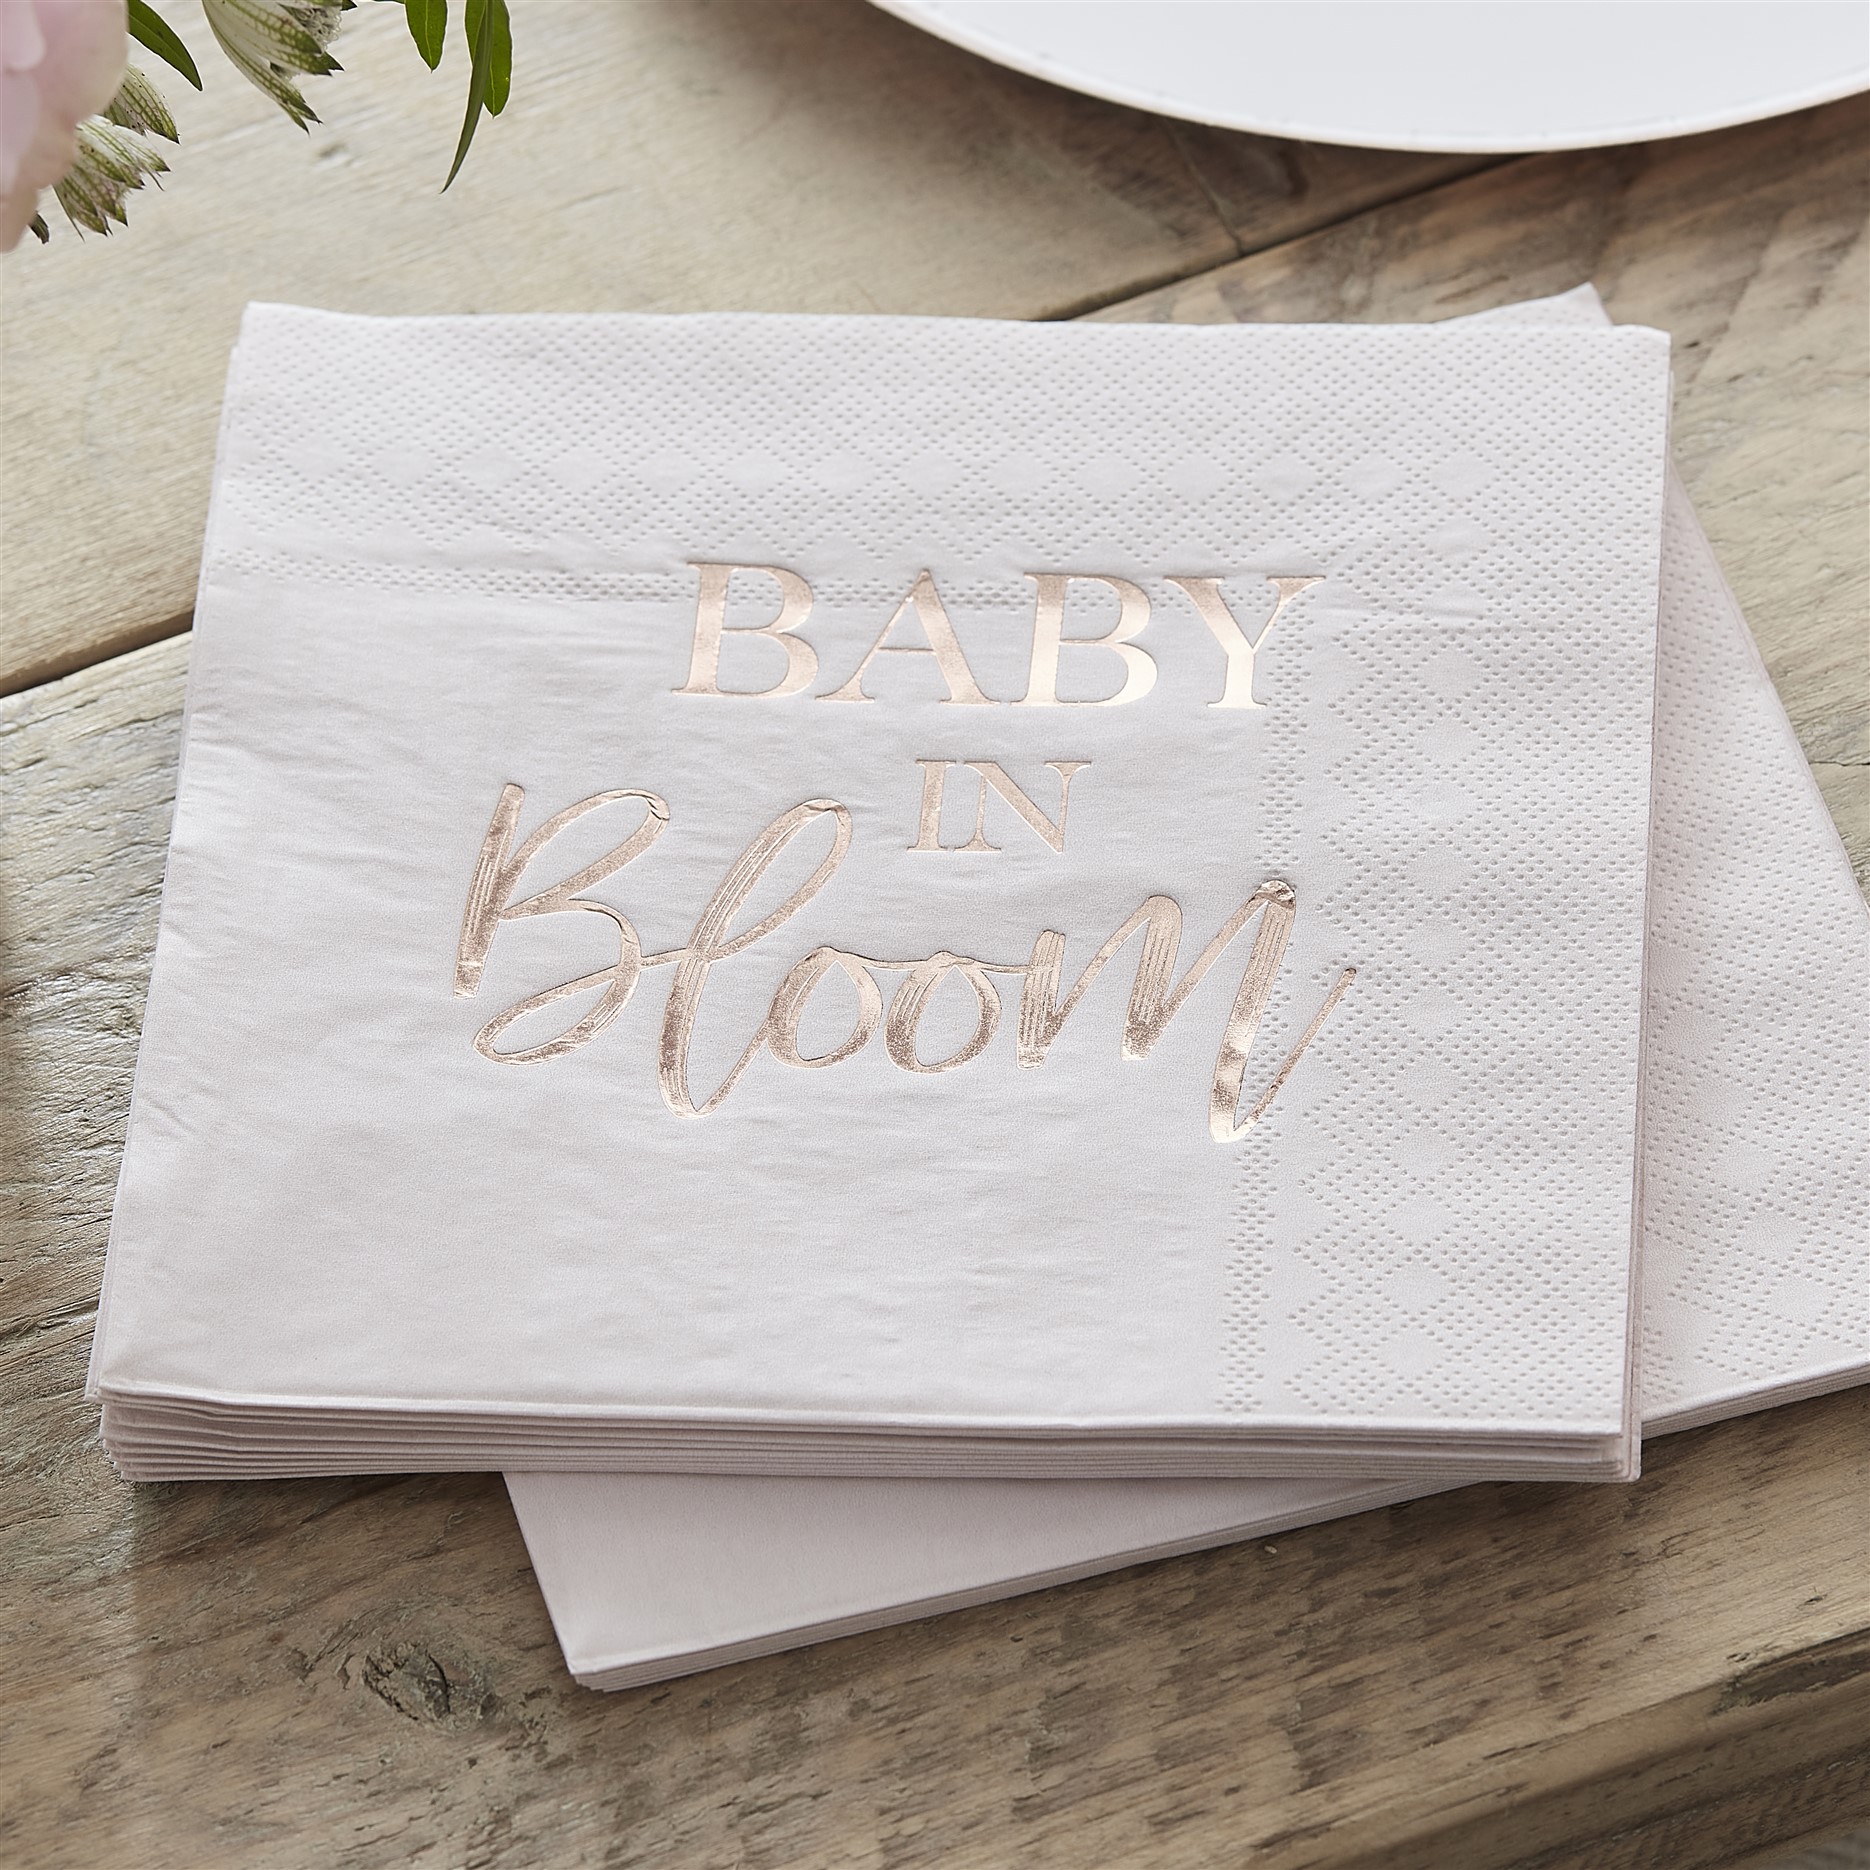 Χαρτοπετσέτες Baby In Bloom 16×16εκ – 16 Τεμάχια